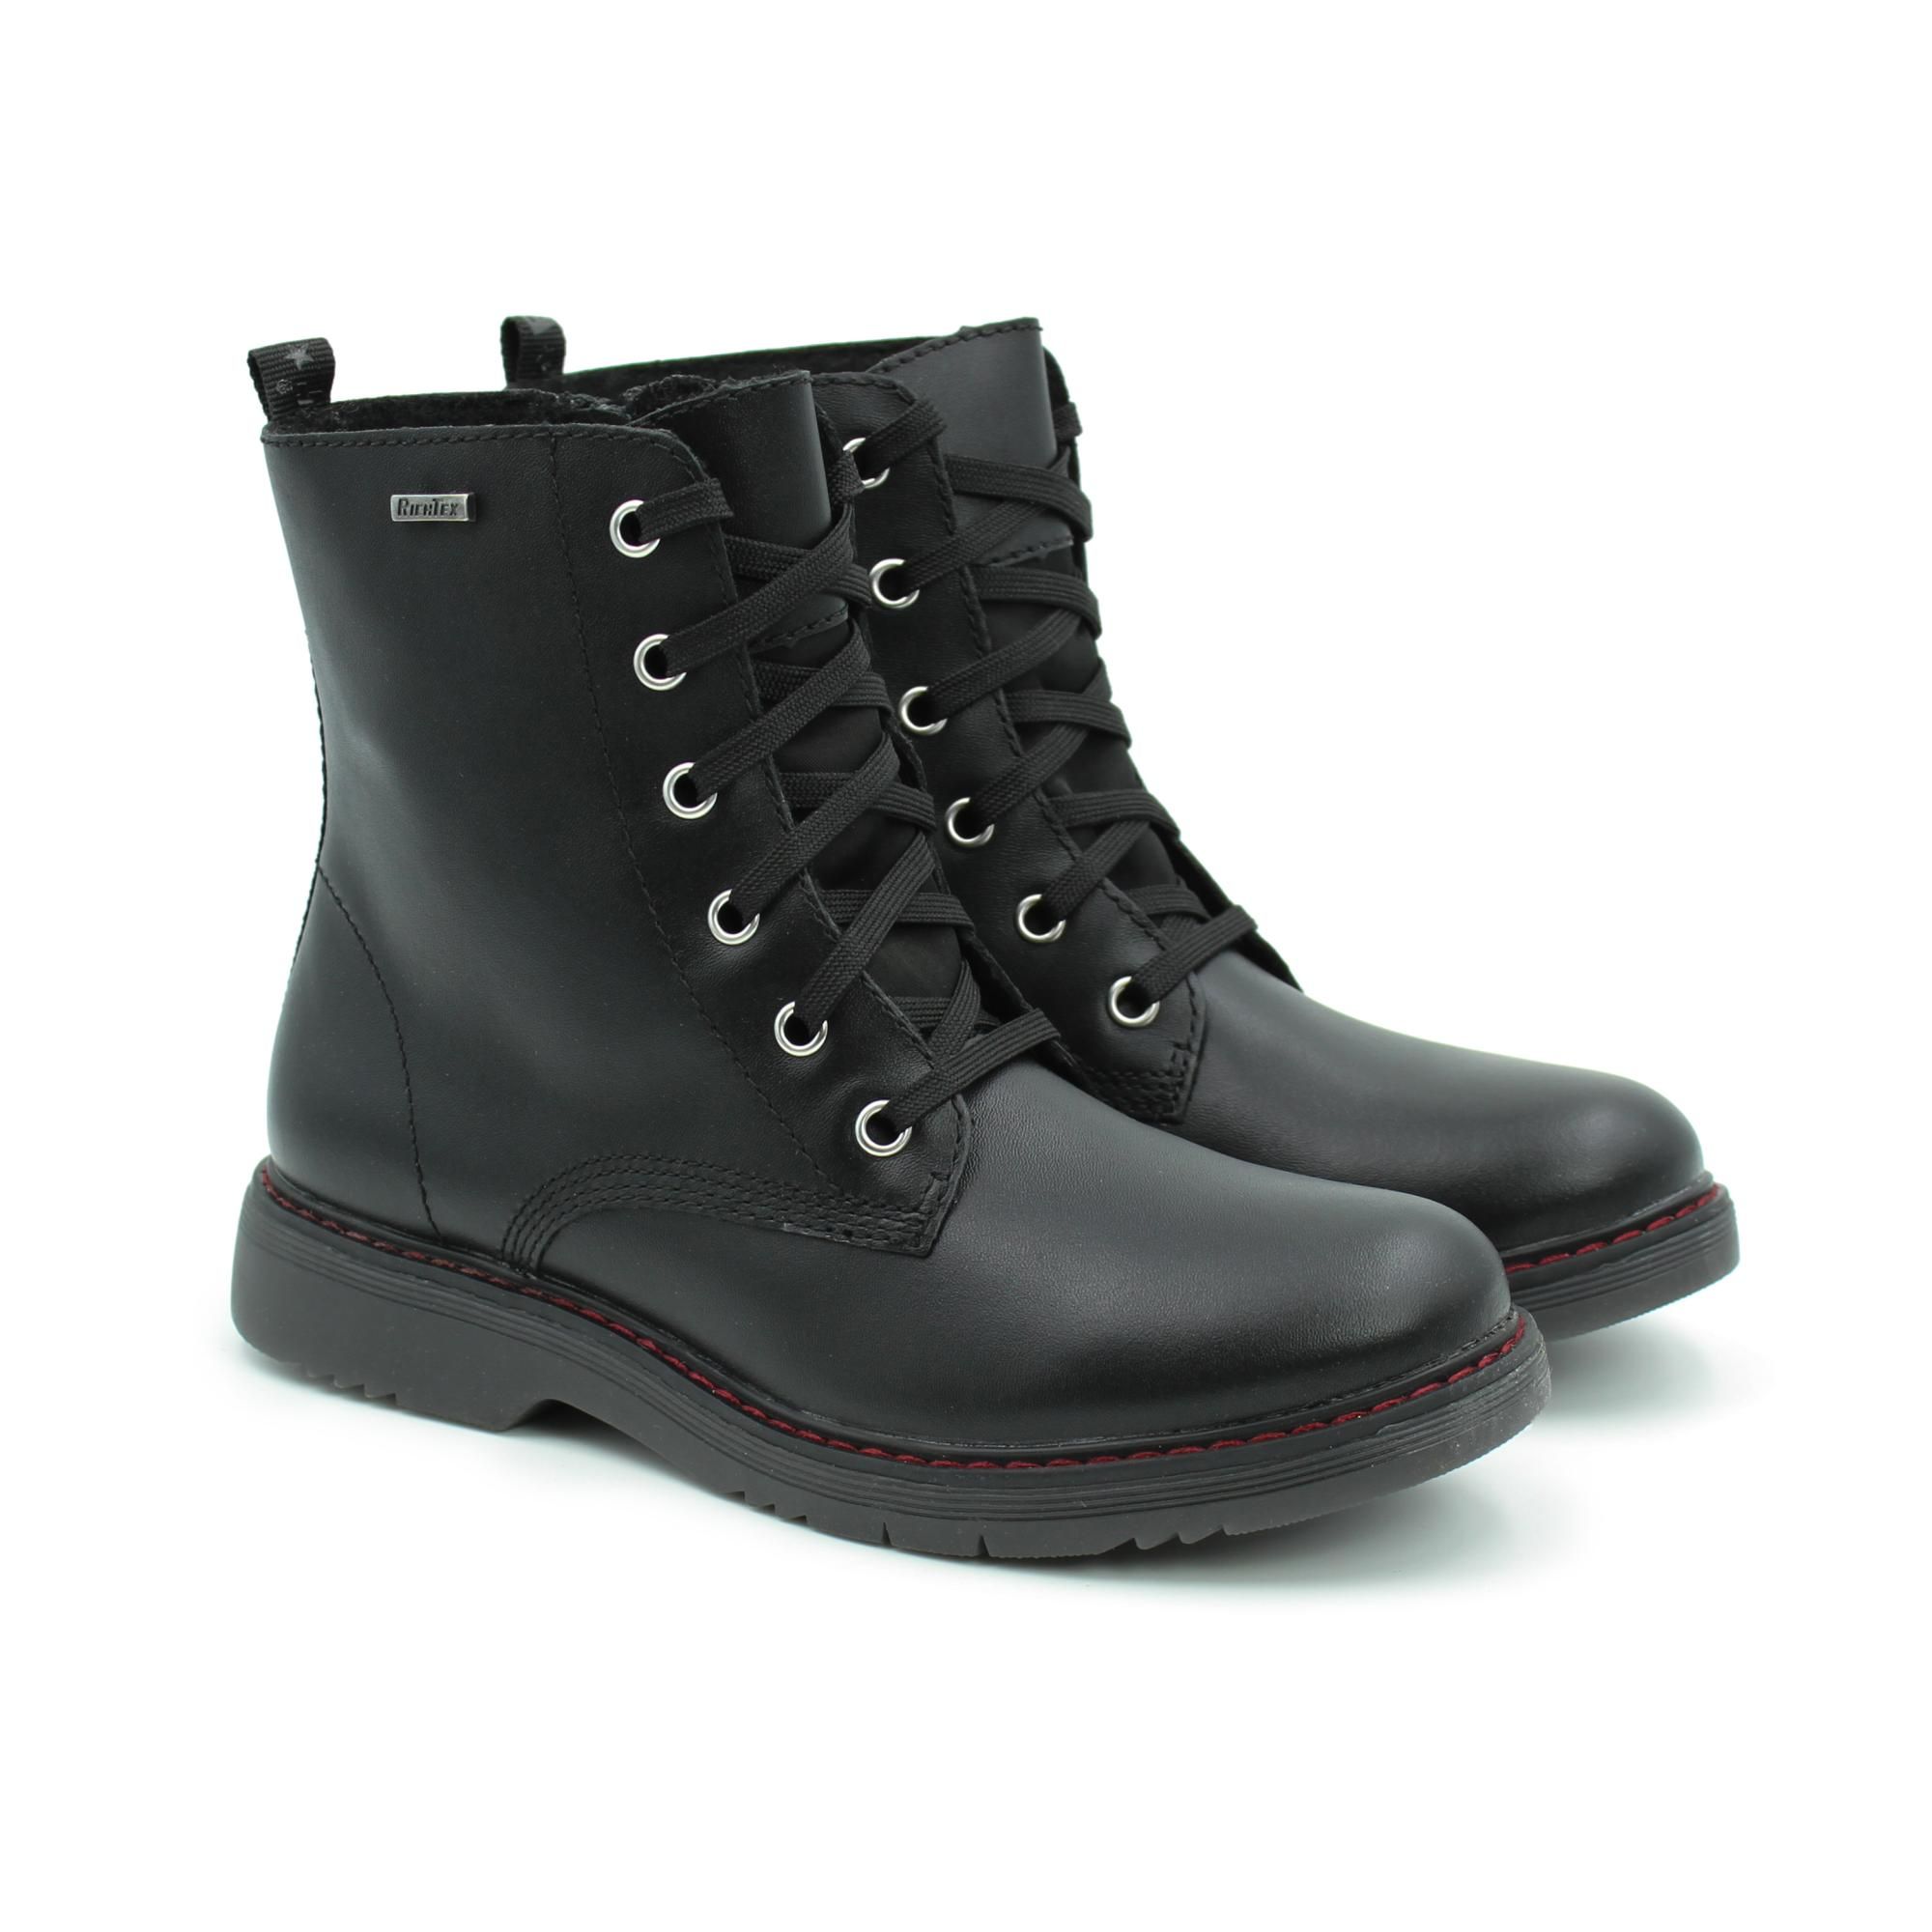 Ботинки Richter Prisma boot 4600-2131-9900 цв. черный р. 39